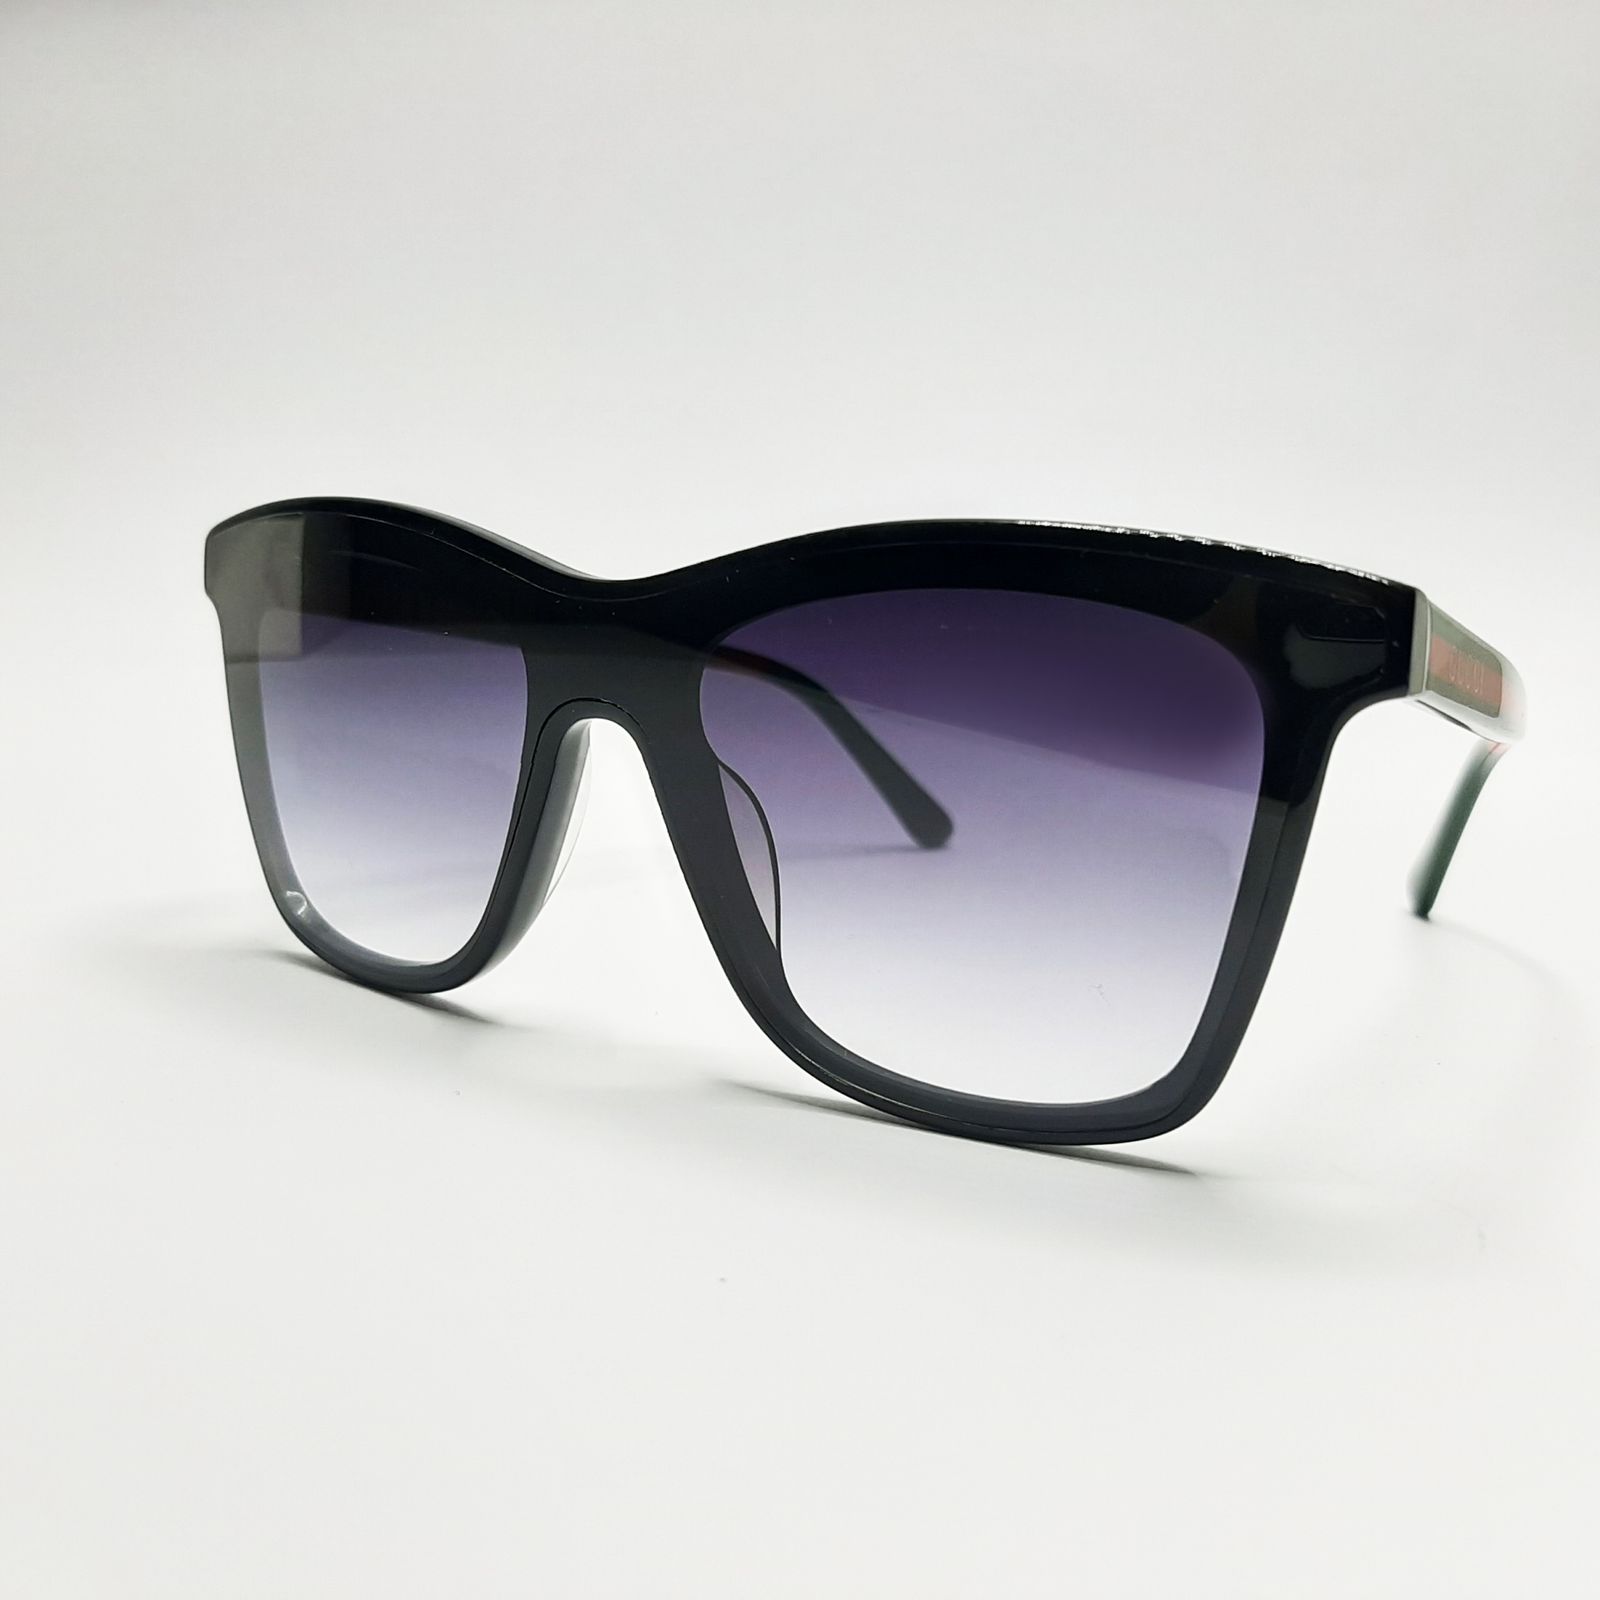 عینک آفتابی مدل GG0166c7 -  - 2